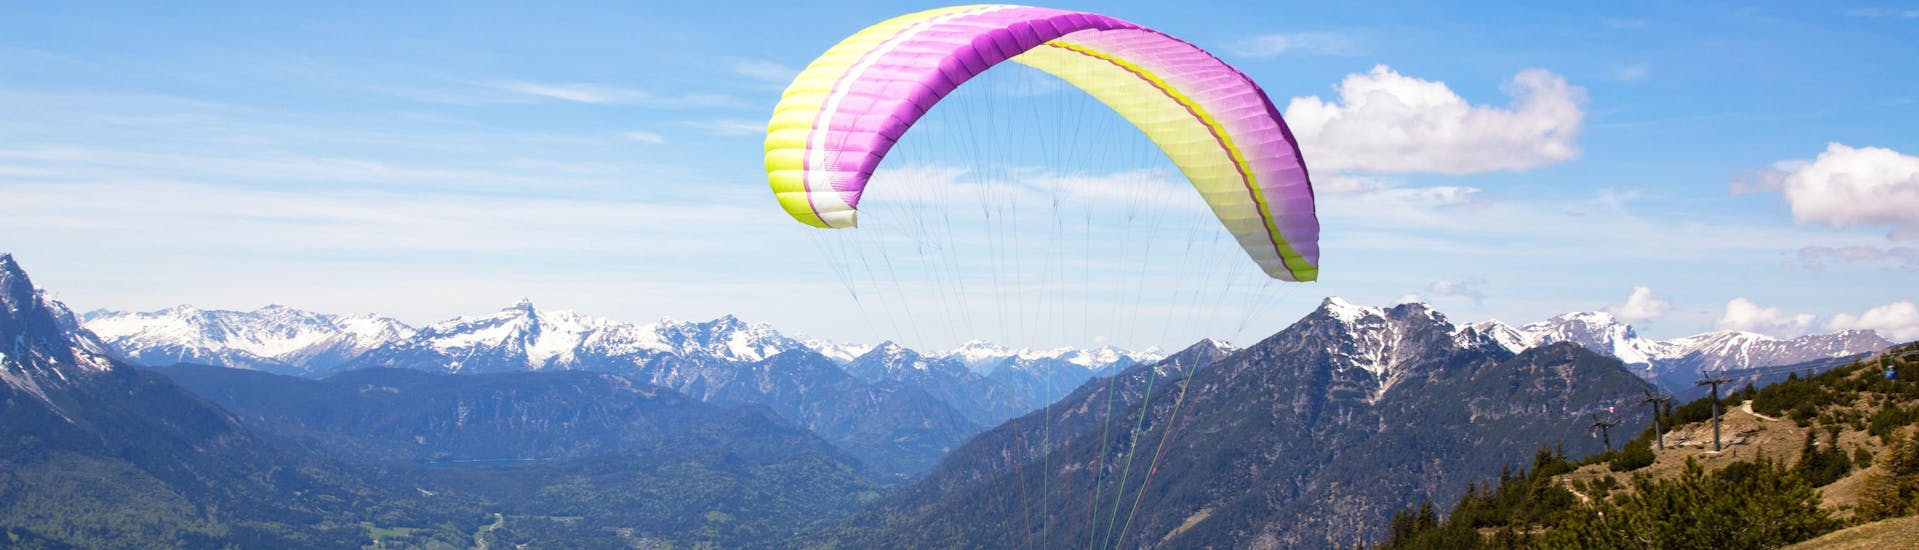 Garmisch-Partenkirchen: Een tandemvlucht vindt plaats in een van de hotspots voor paragliding.